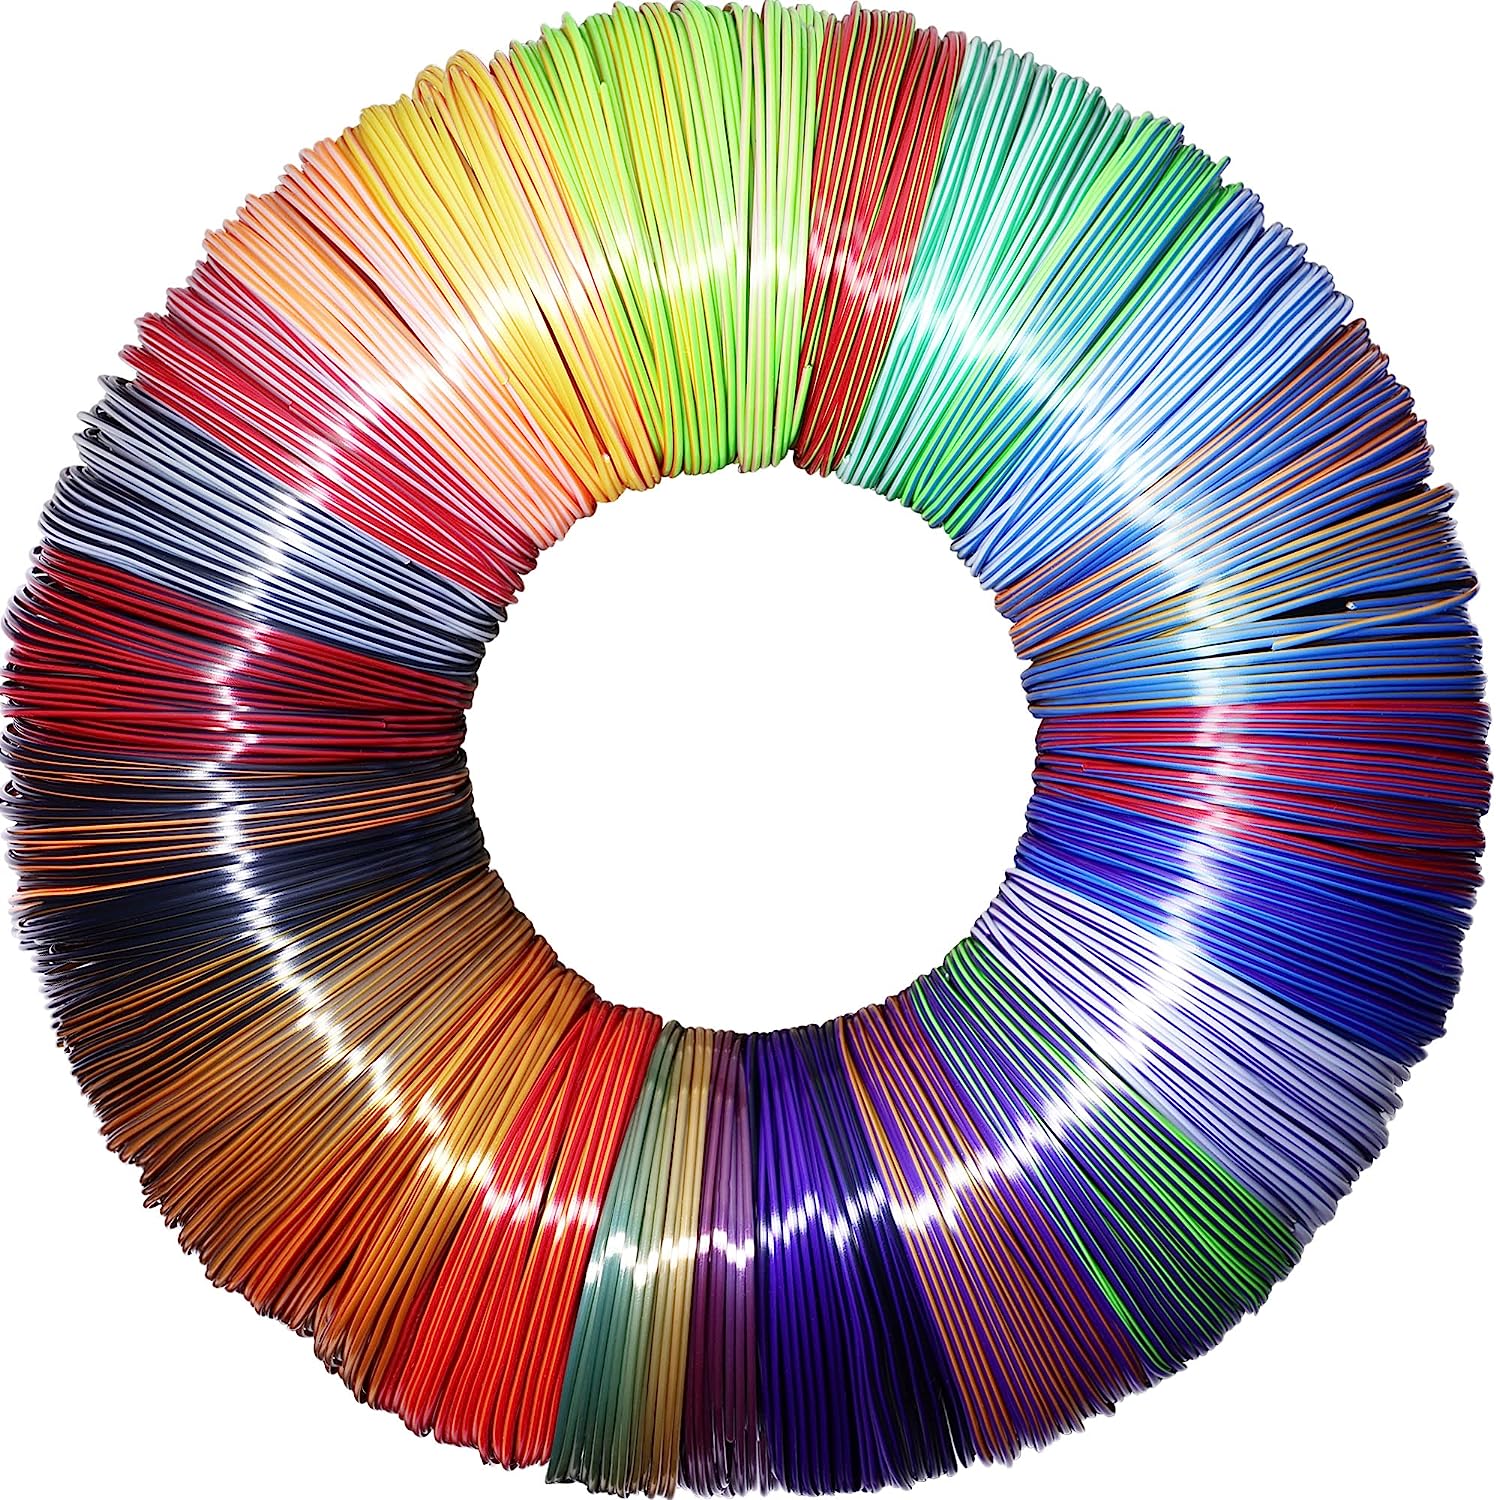 MIKA3D 25 Colors 2 Dual Color in 1 Silk PLA Filament [...]